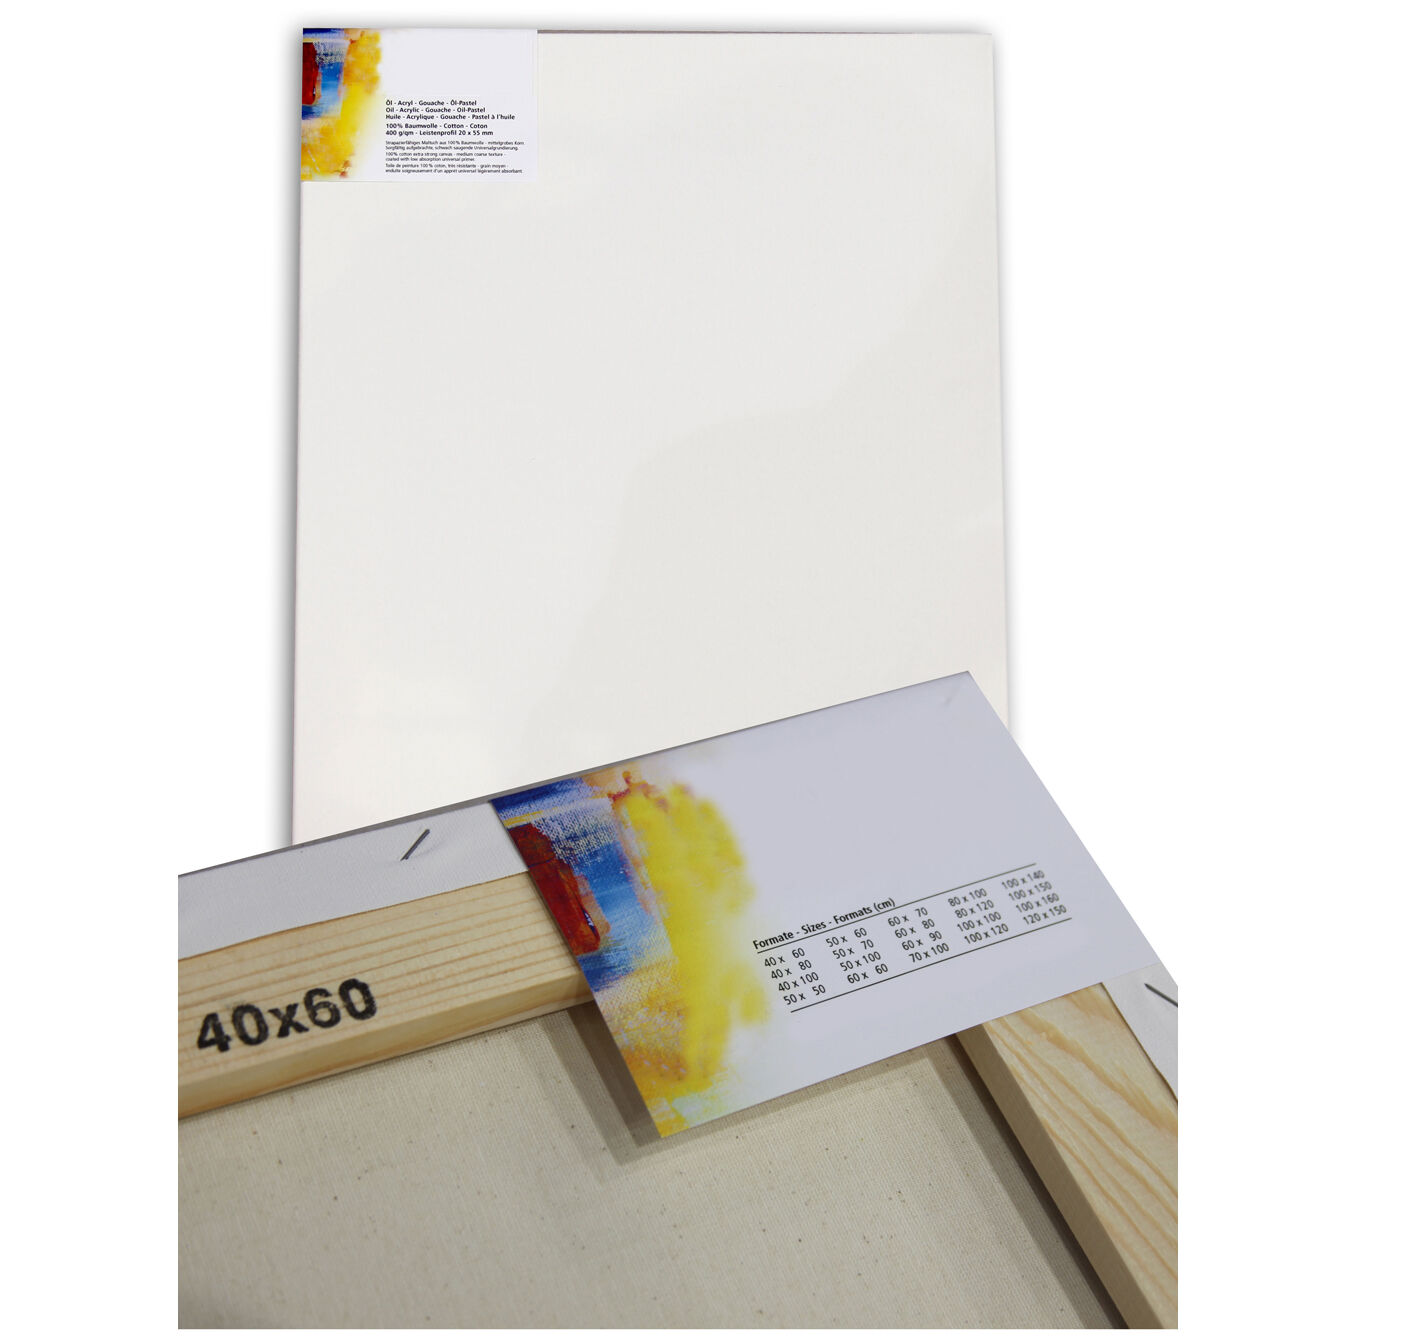 NEU Cotton 400 Premium-Keilrahmen Professionell 20mm Leistenstärke, 50x50cm - 1 Stück Bild 2